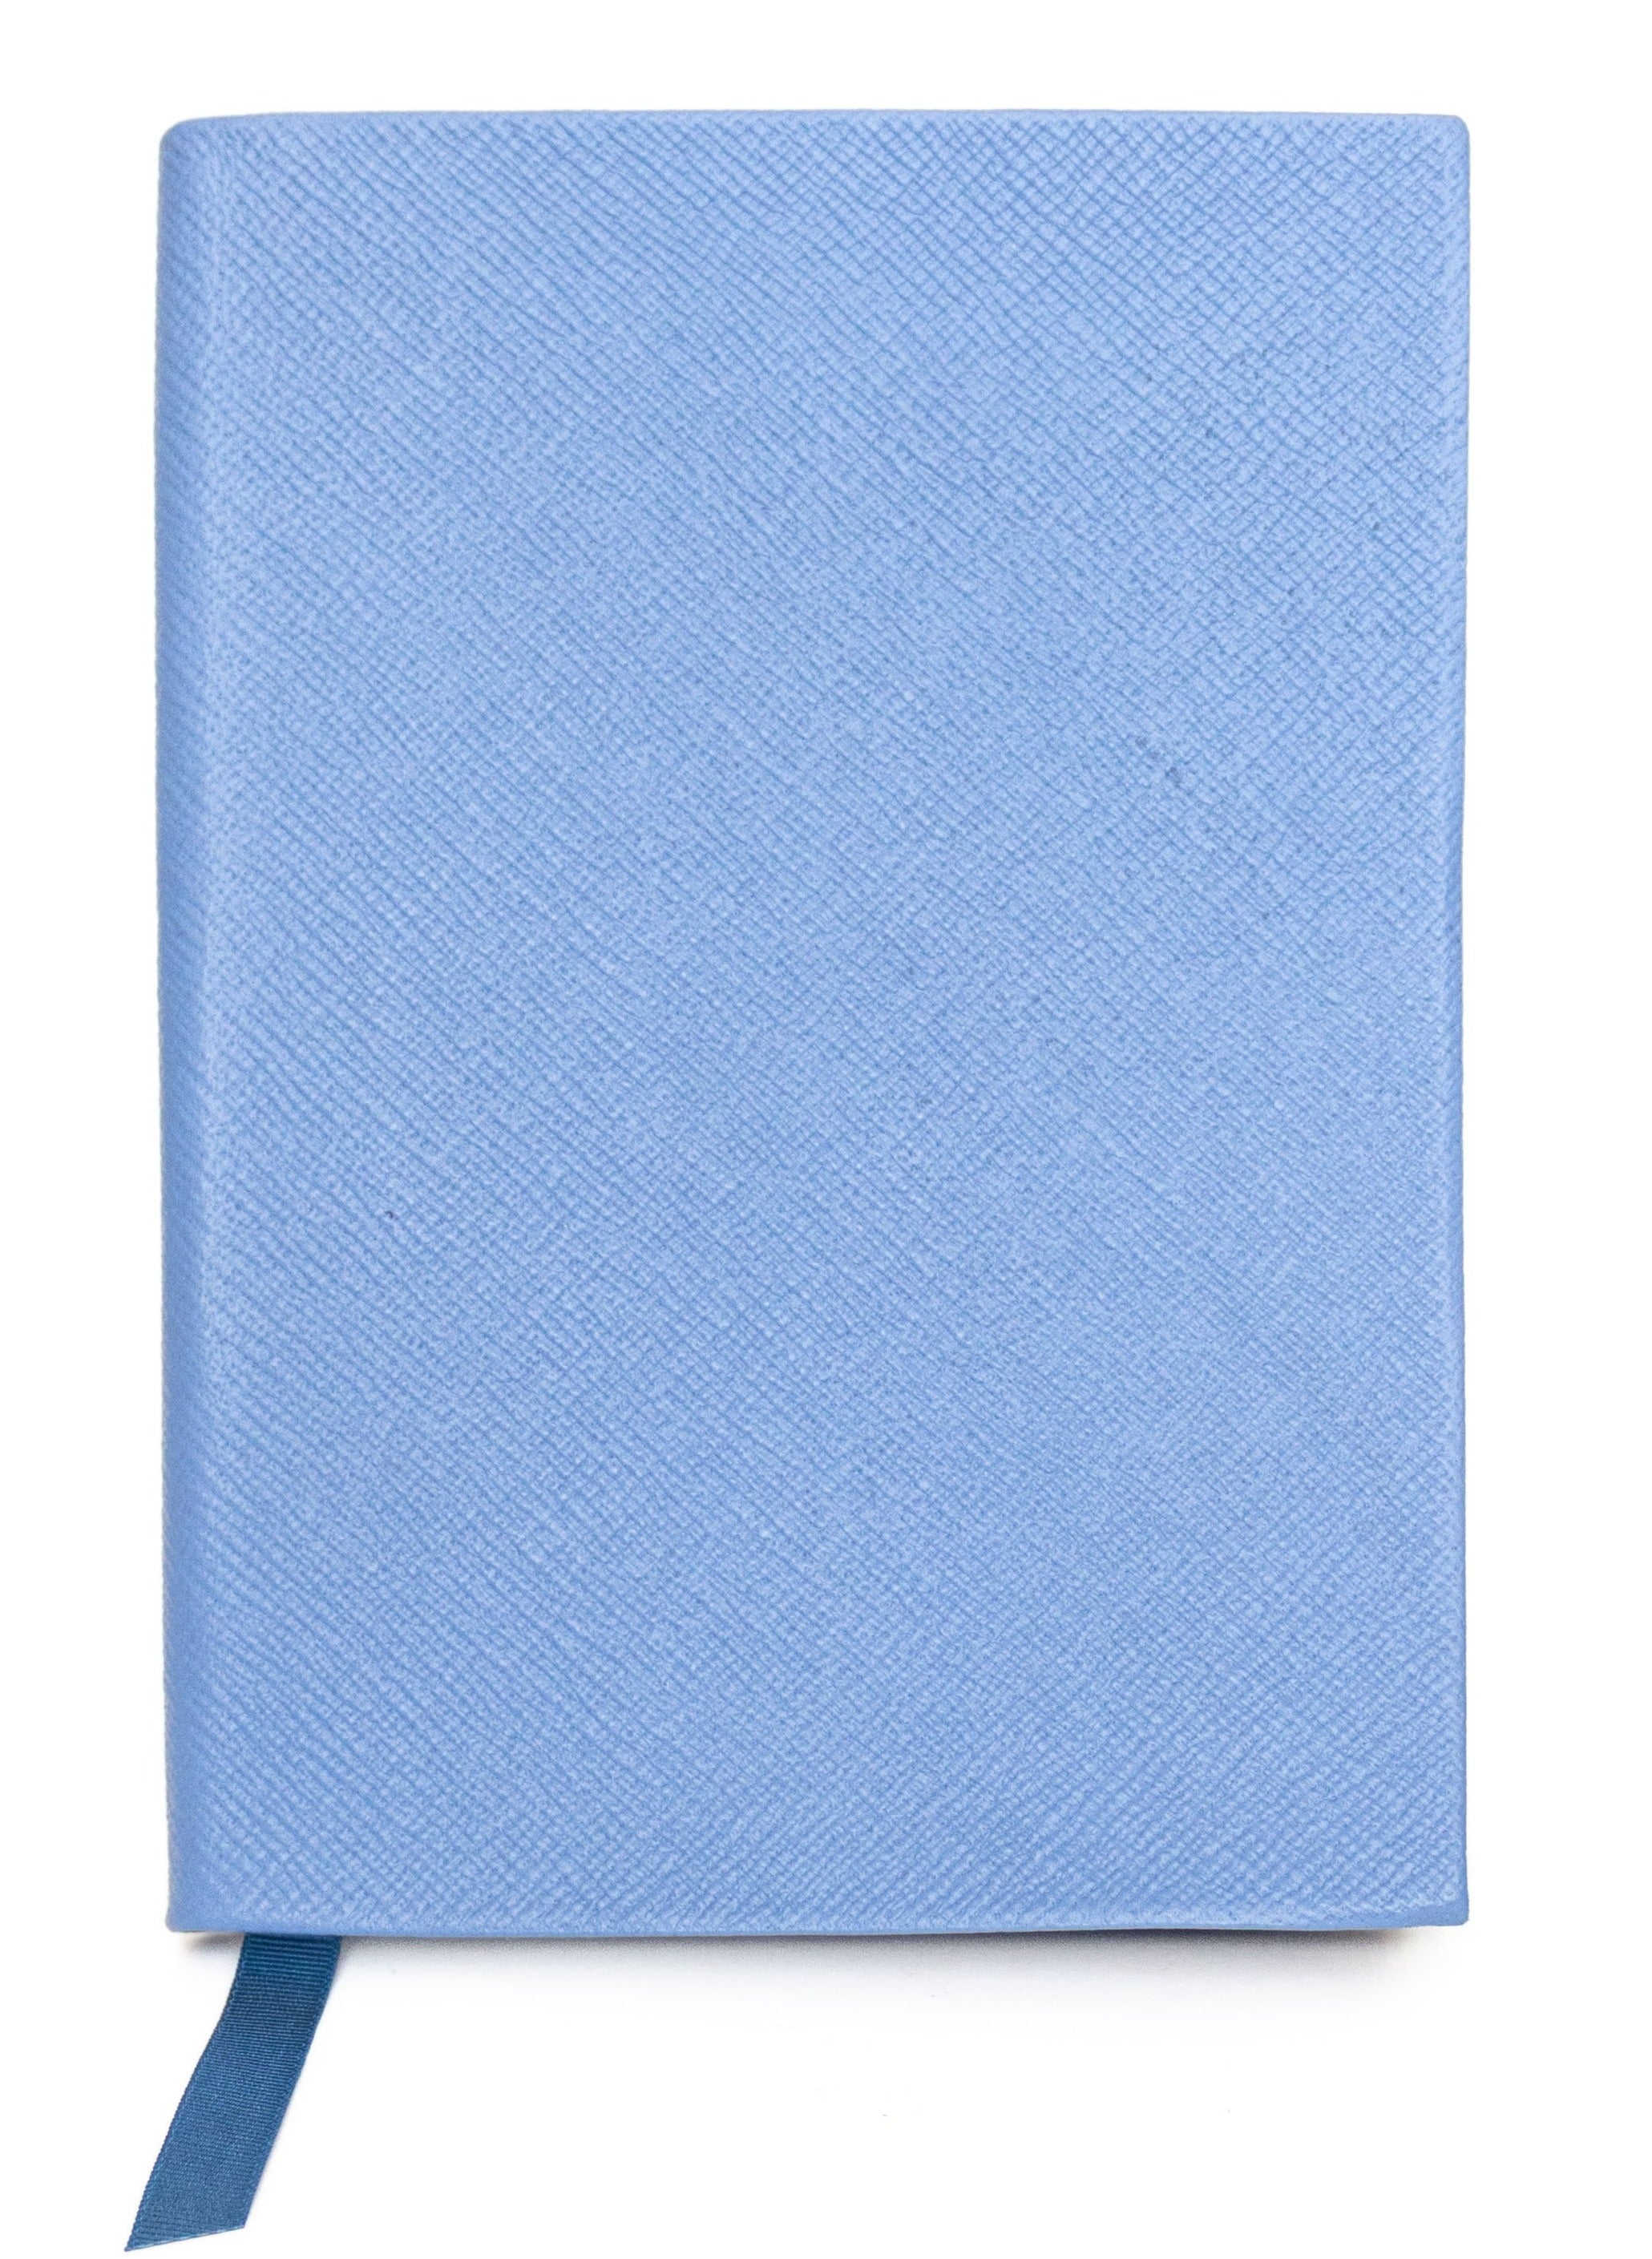 Smythson Soho Notebook Nile Blue - Decree Co. 